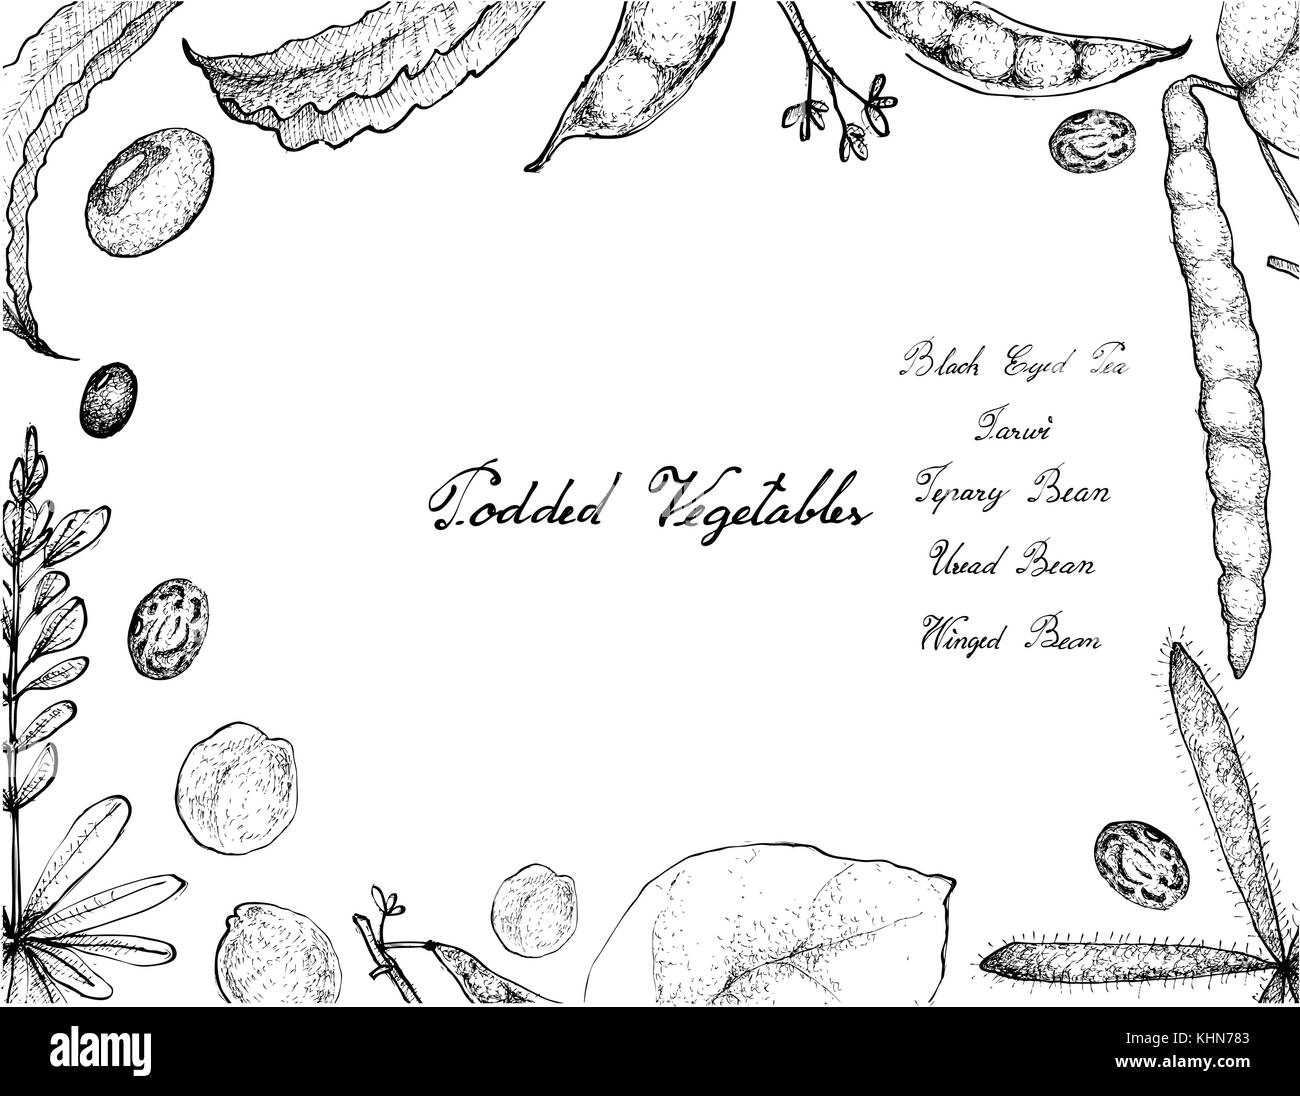 Légume, illustration cadre de croquis à main mange des légumes frais isolé sur fond blanc. Illustration de Vecteur